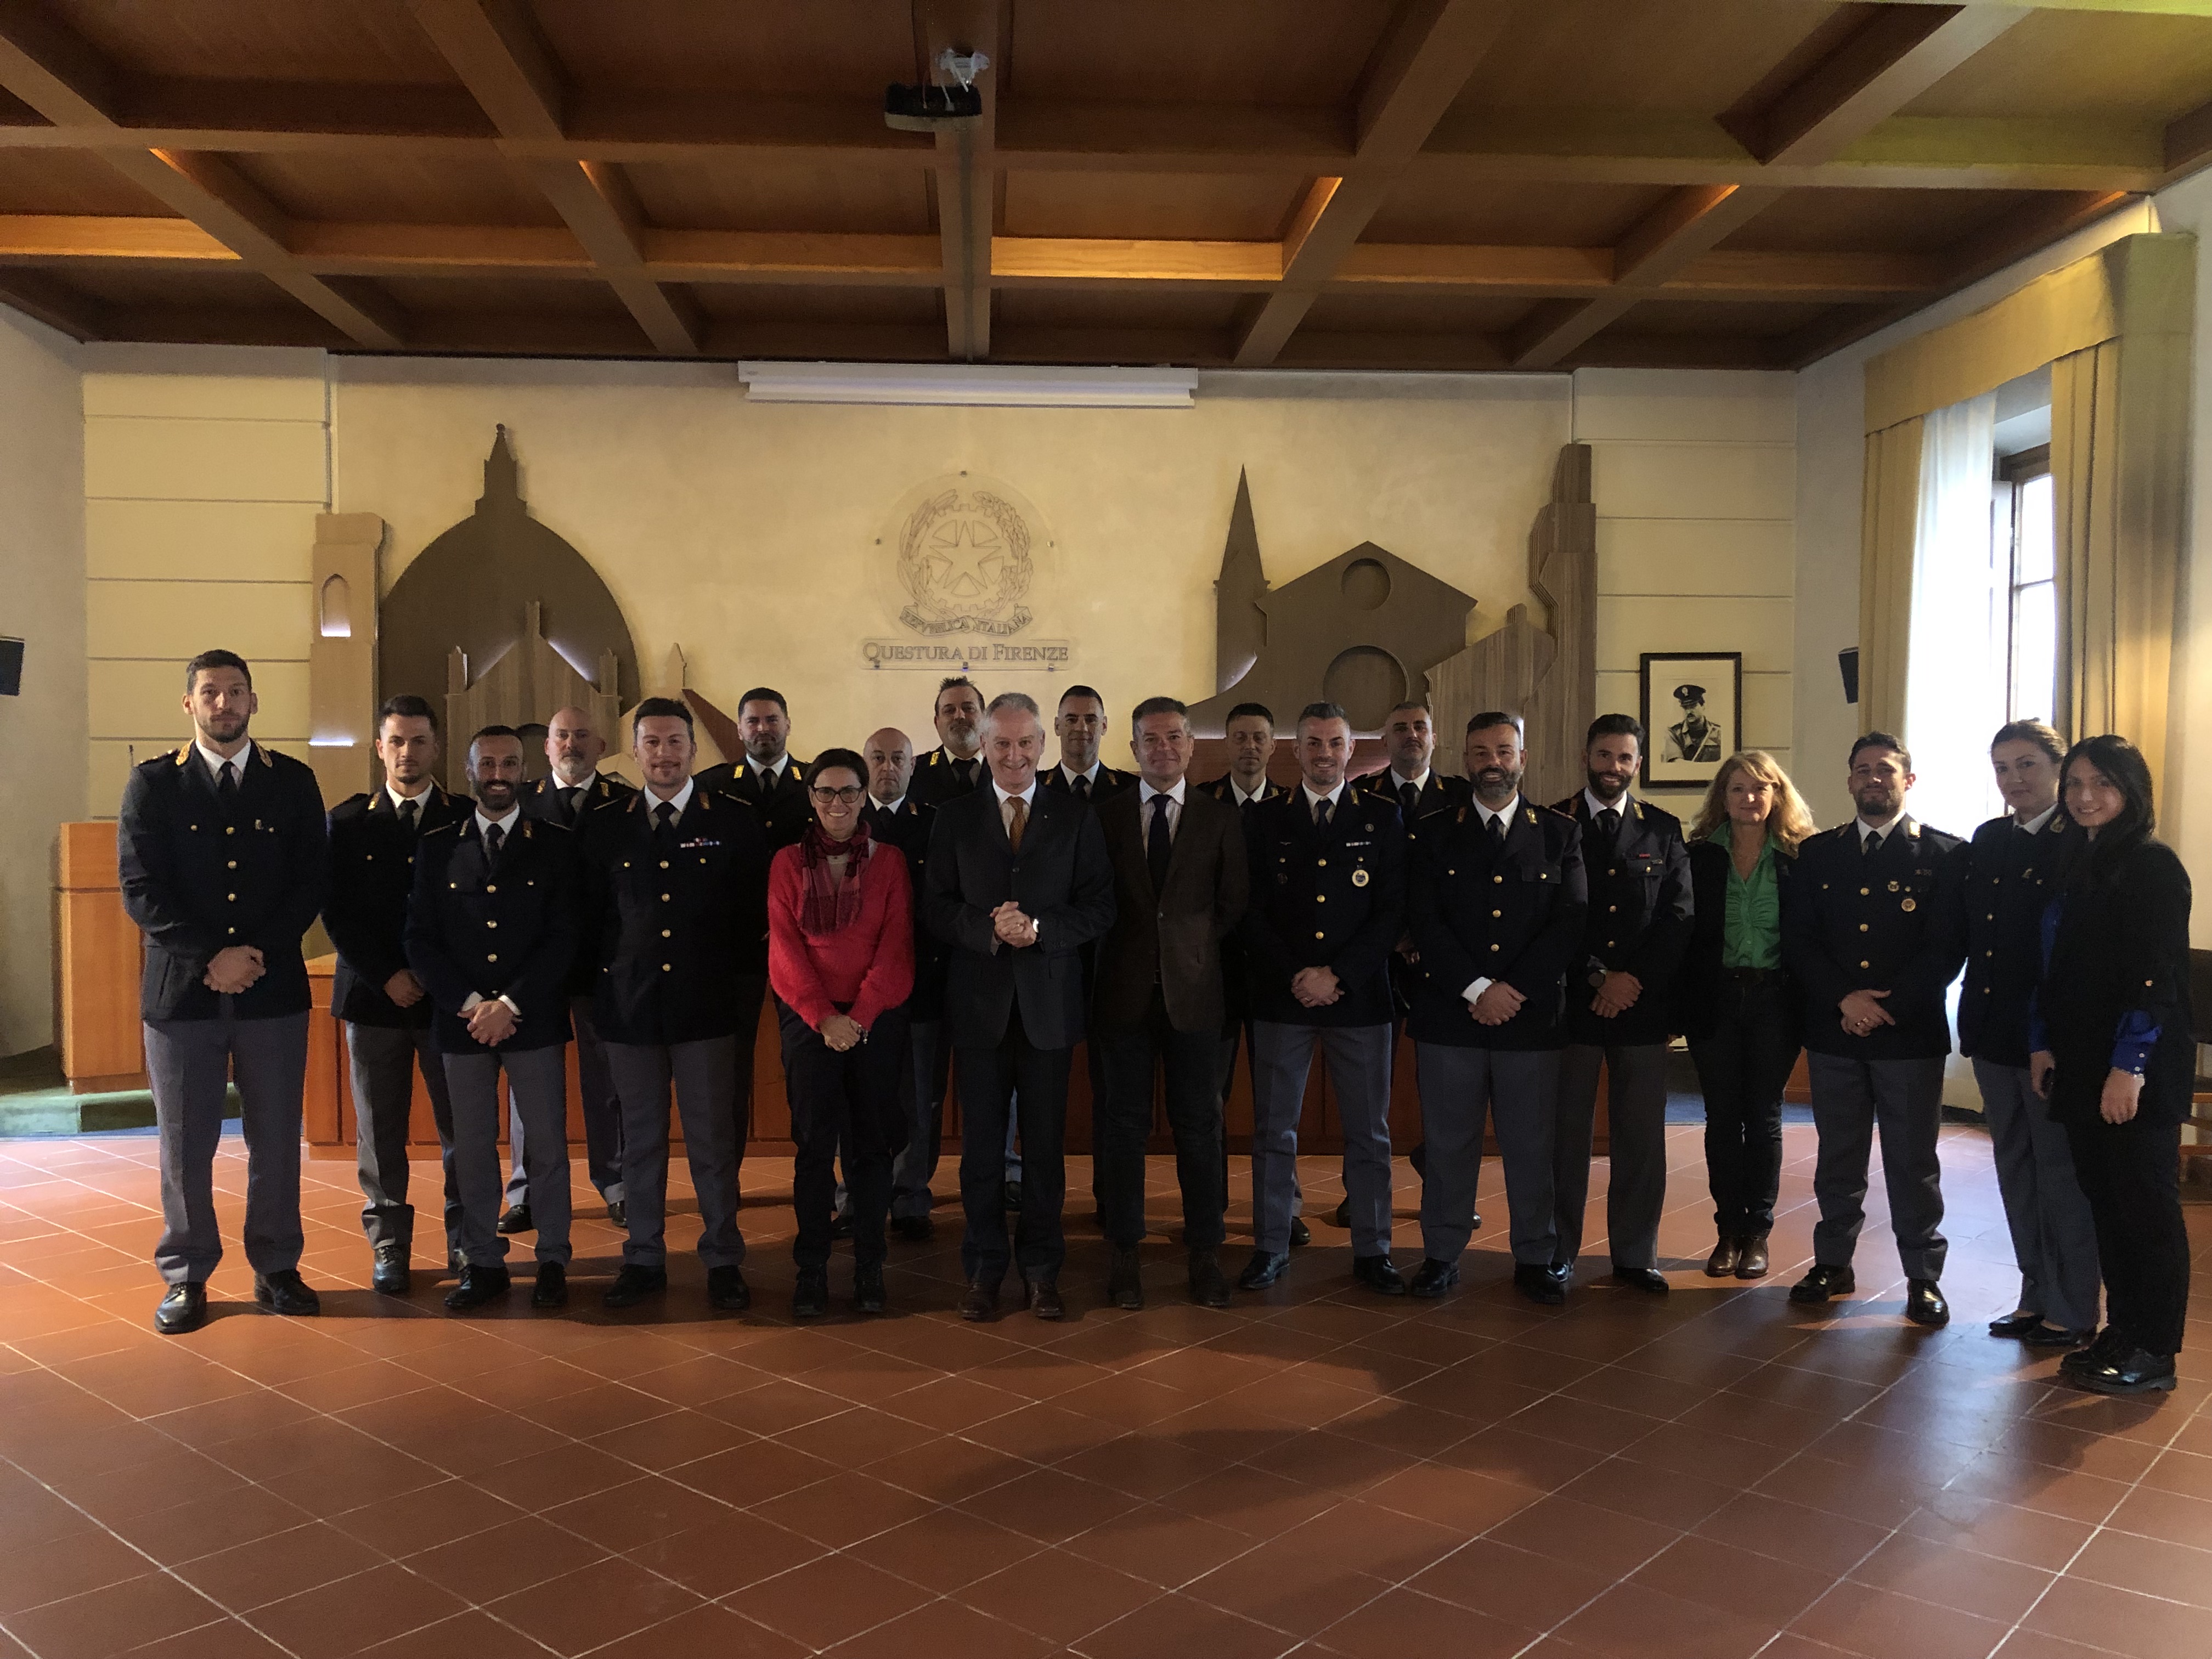 Il Questore della provincia di Firenze Maurizio Auriemma incontra in Sala Cangiano i 13 nuovi poliziotti del ruolo Ispettori assegnati alla Questura fiorentina